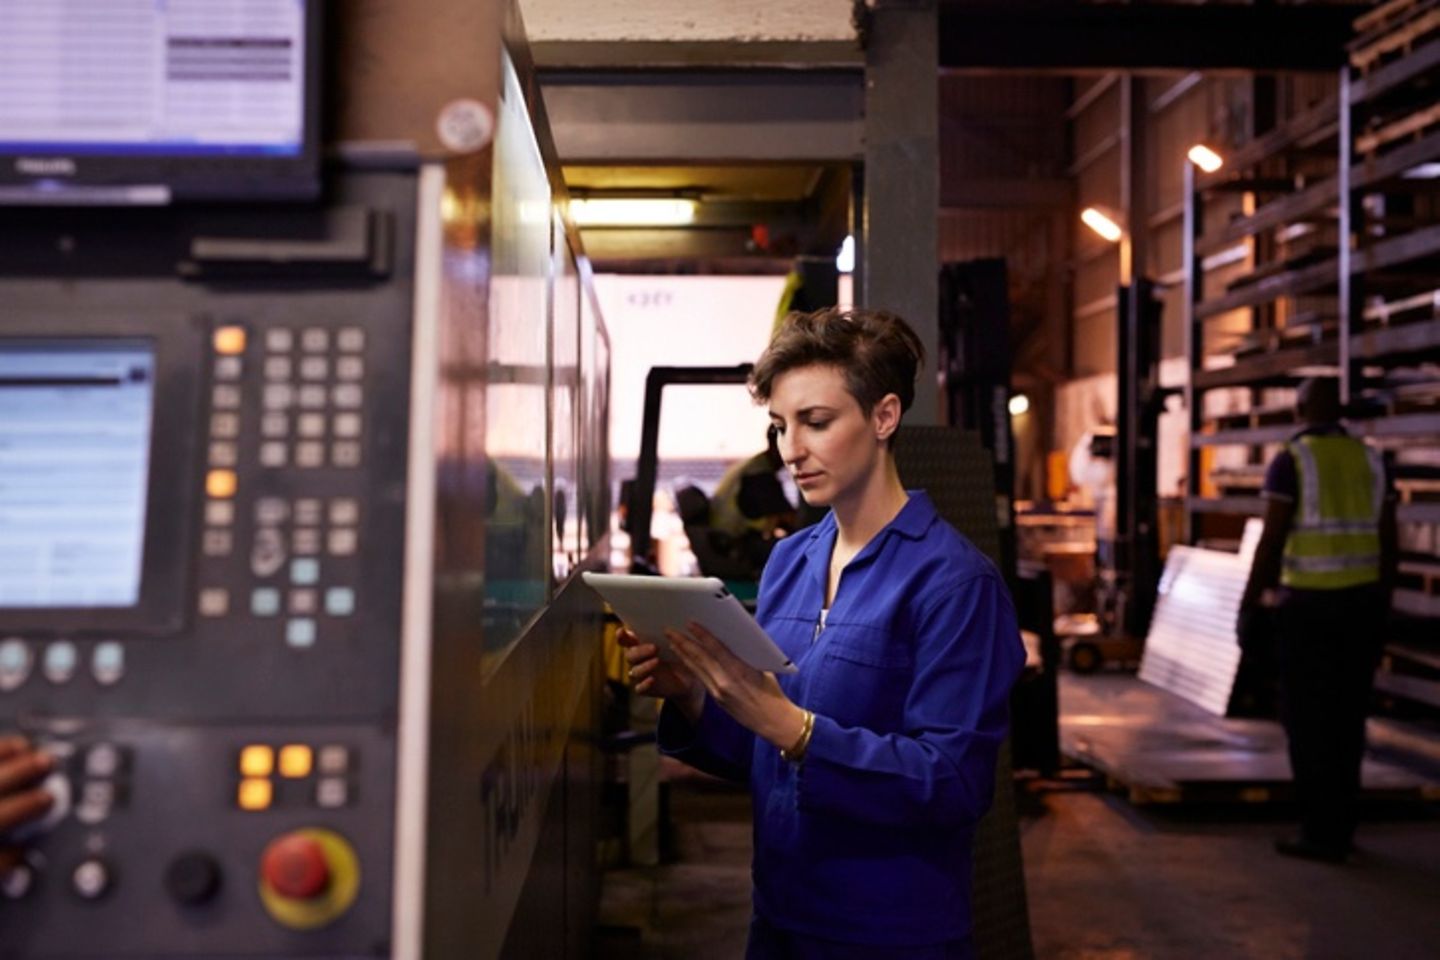 Eine Stahlarbeiterin in einem blauen Anzug hält ein Tablet in der Hand.